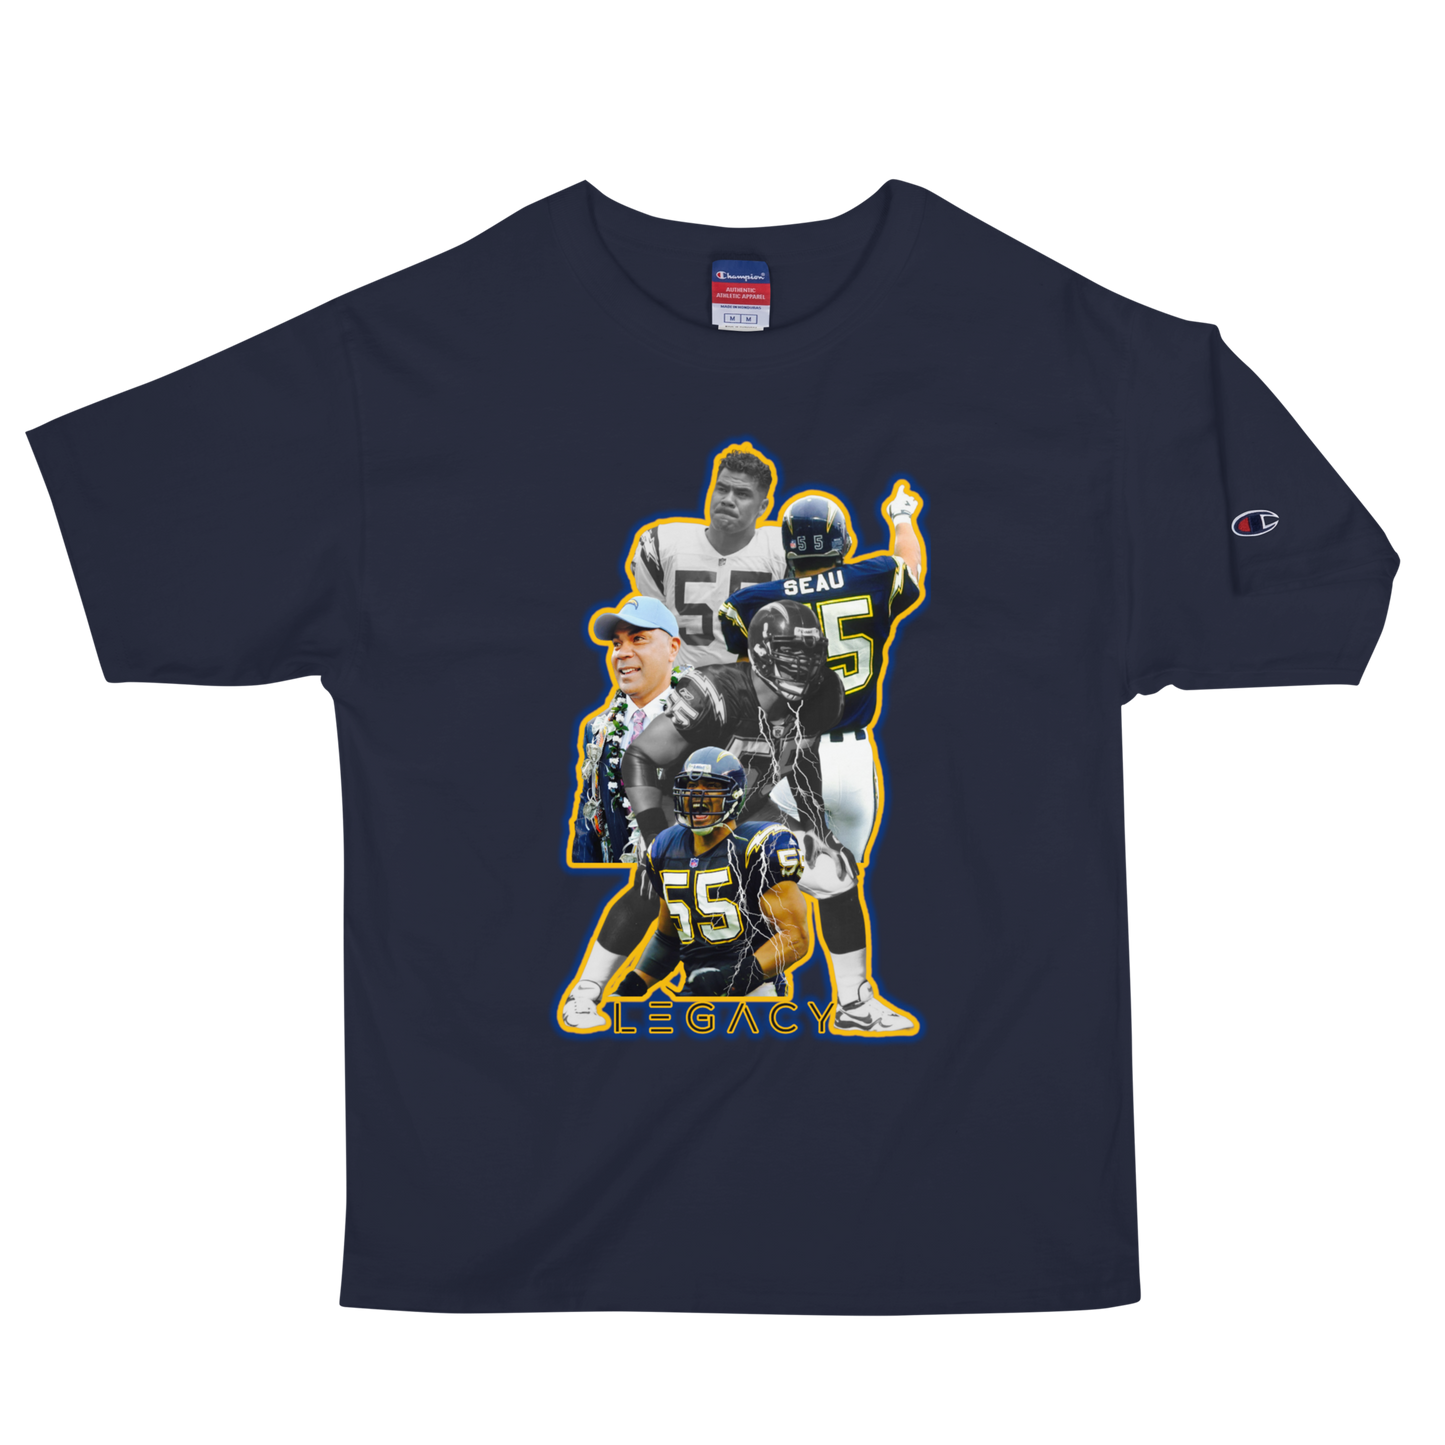 Legends "Tasmanian Devil" Champion T-Shirt